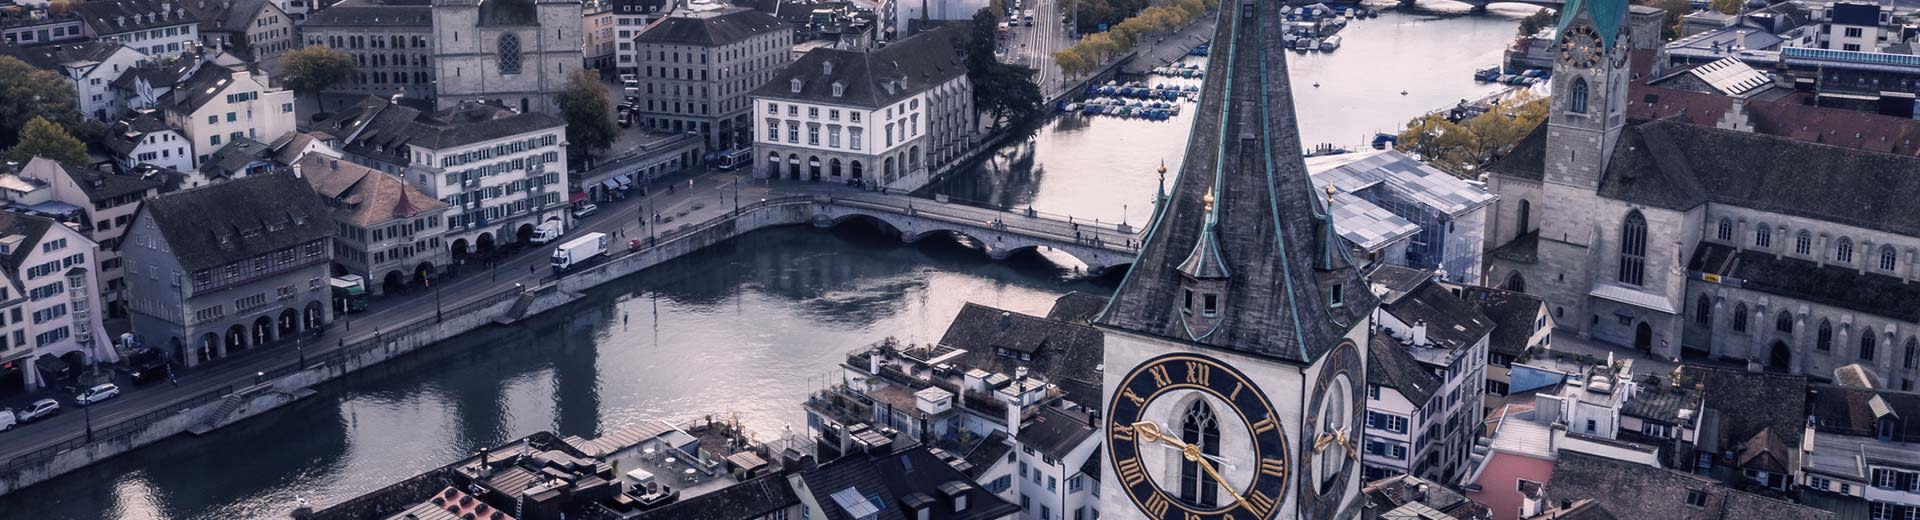 Vista aérea del río Limmat en Zúrich al anochecer o al amanecer, con una imponente catedral ante él.